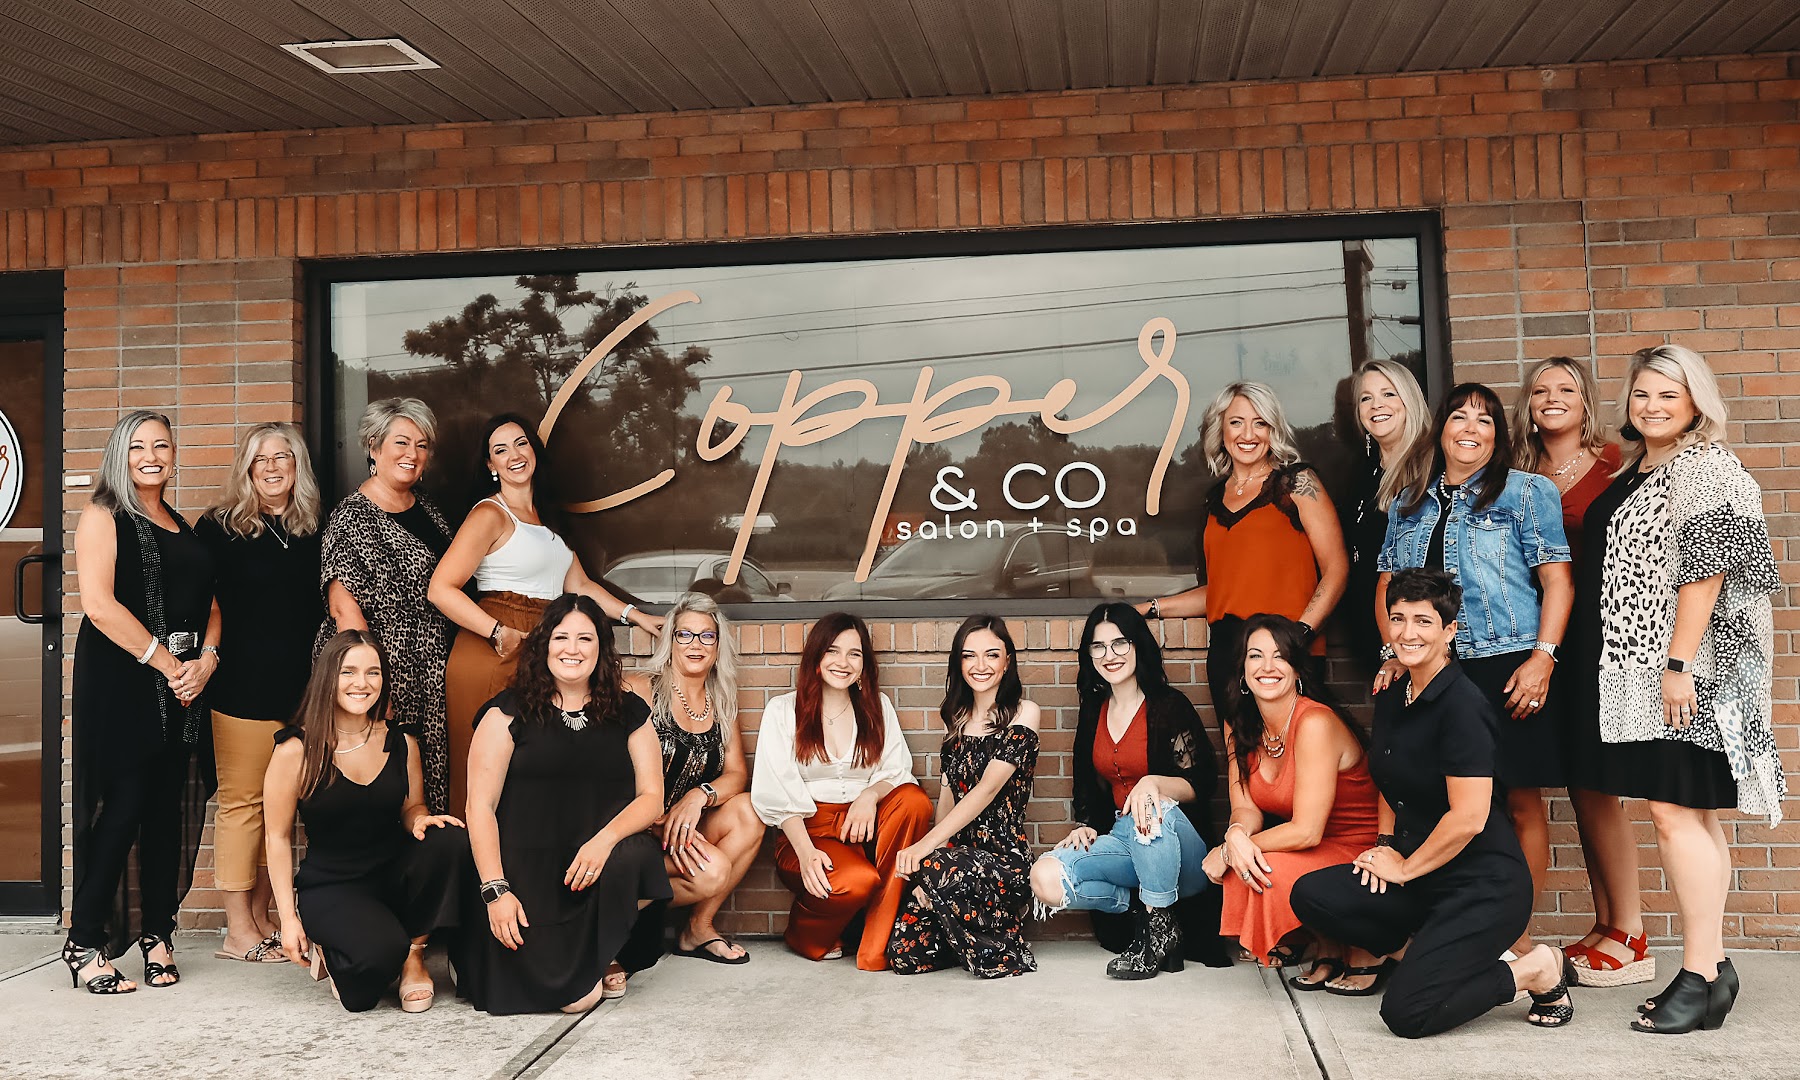 Copper & Co Salon Spa